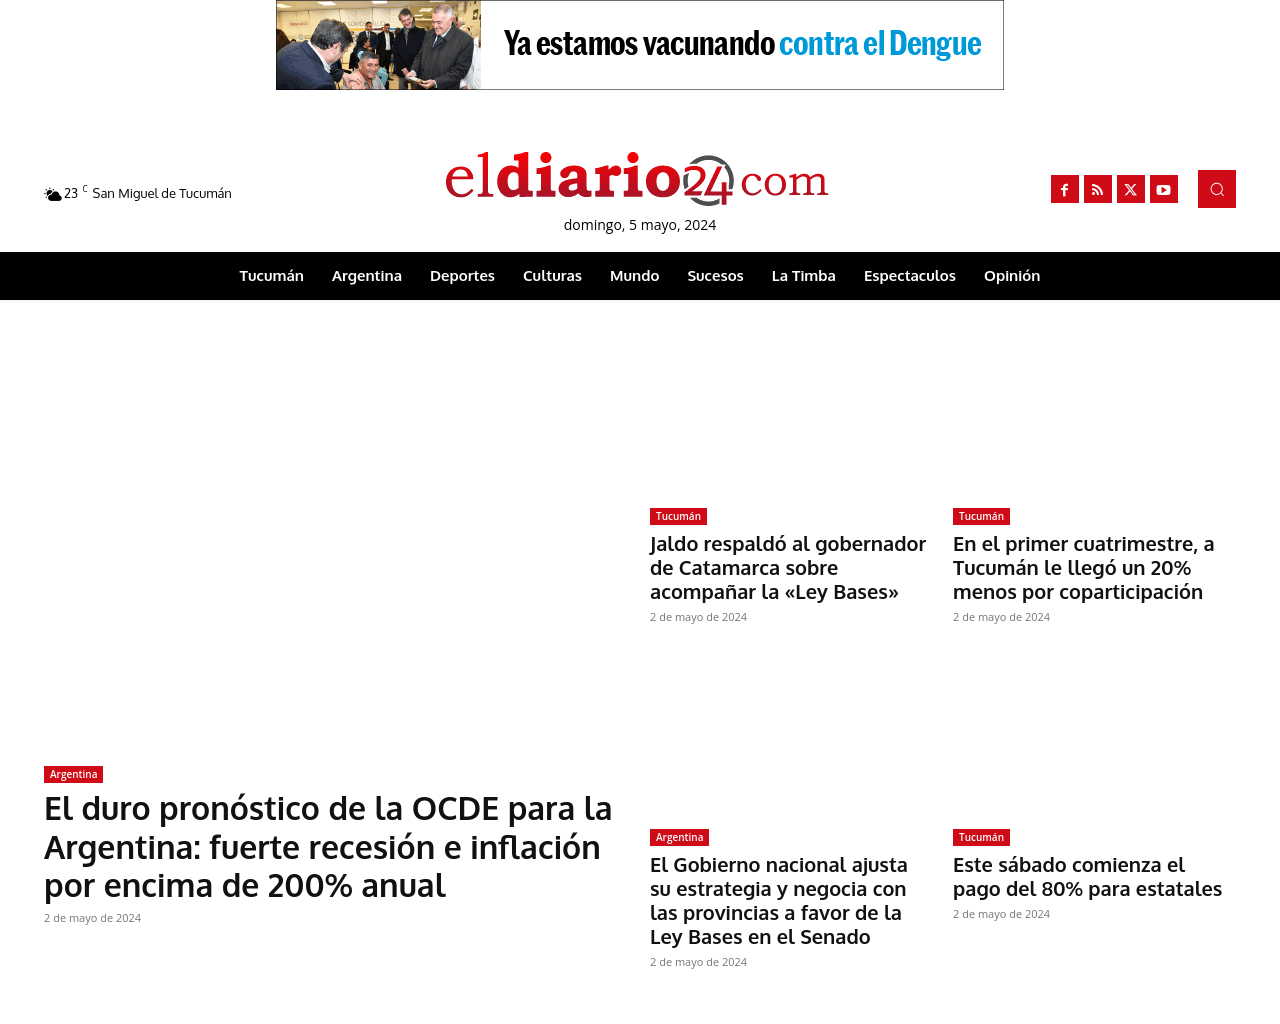 eldiario24.com